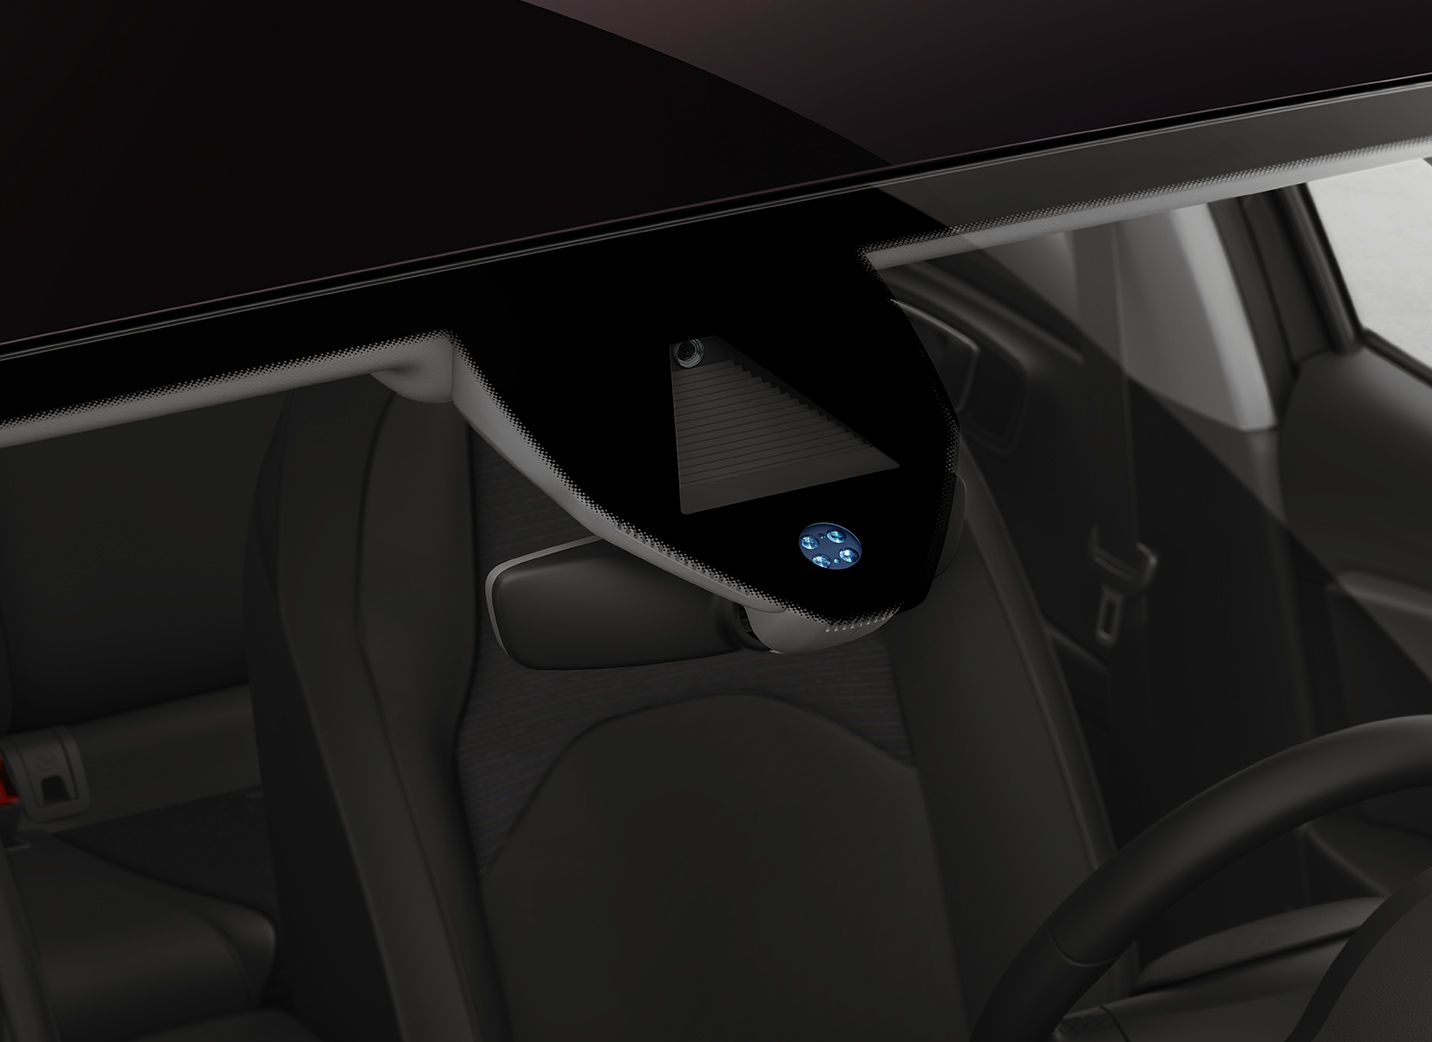 SEAT Leon interior technology rain light sensors